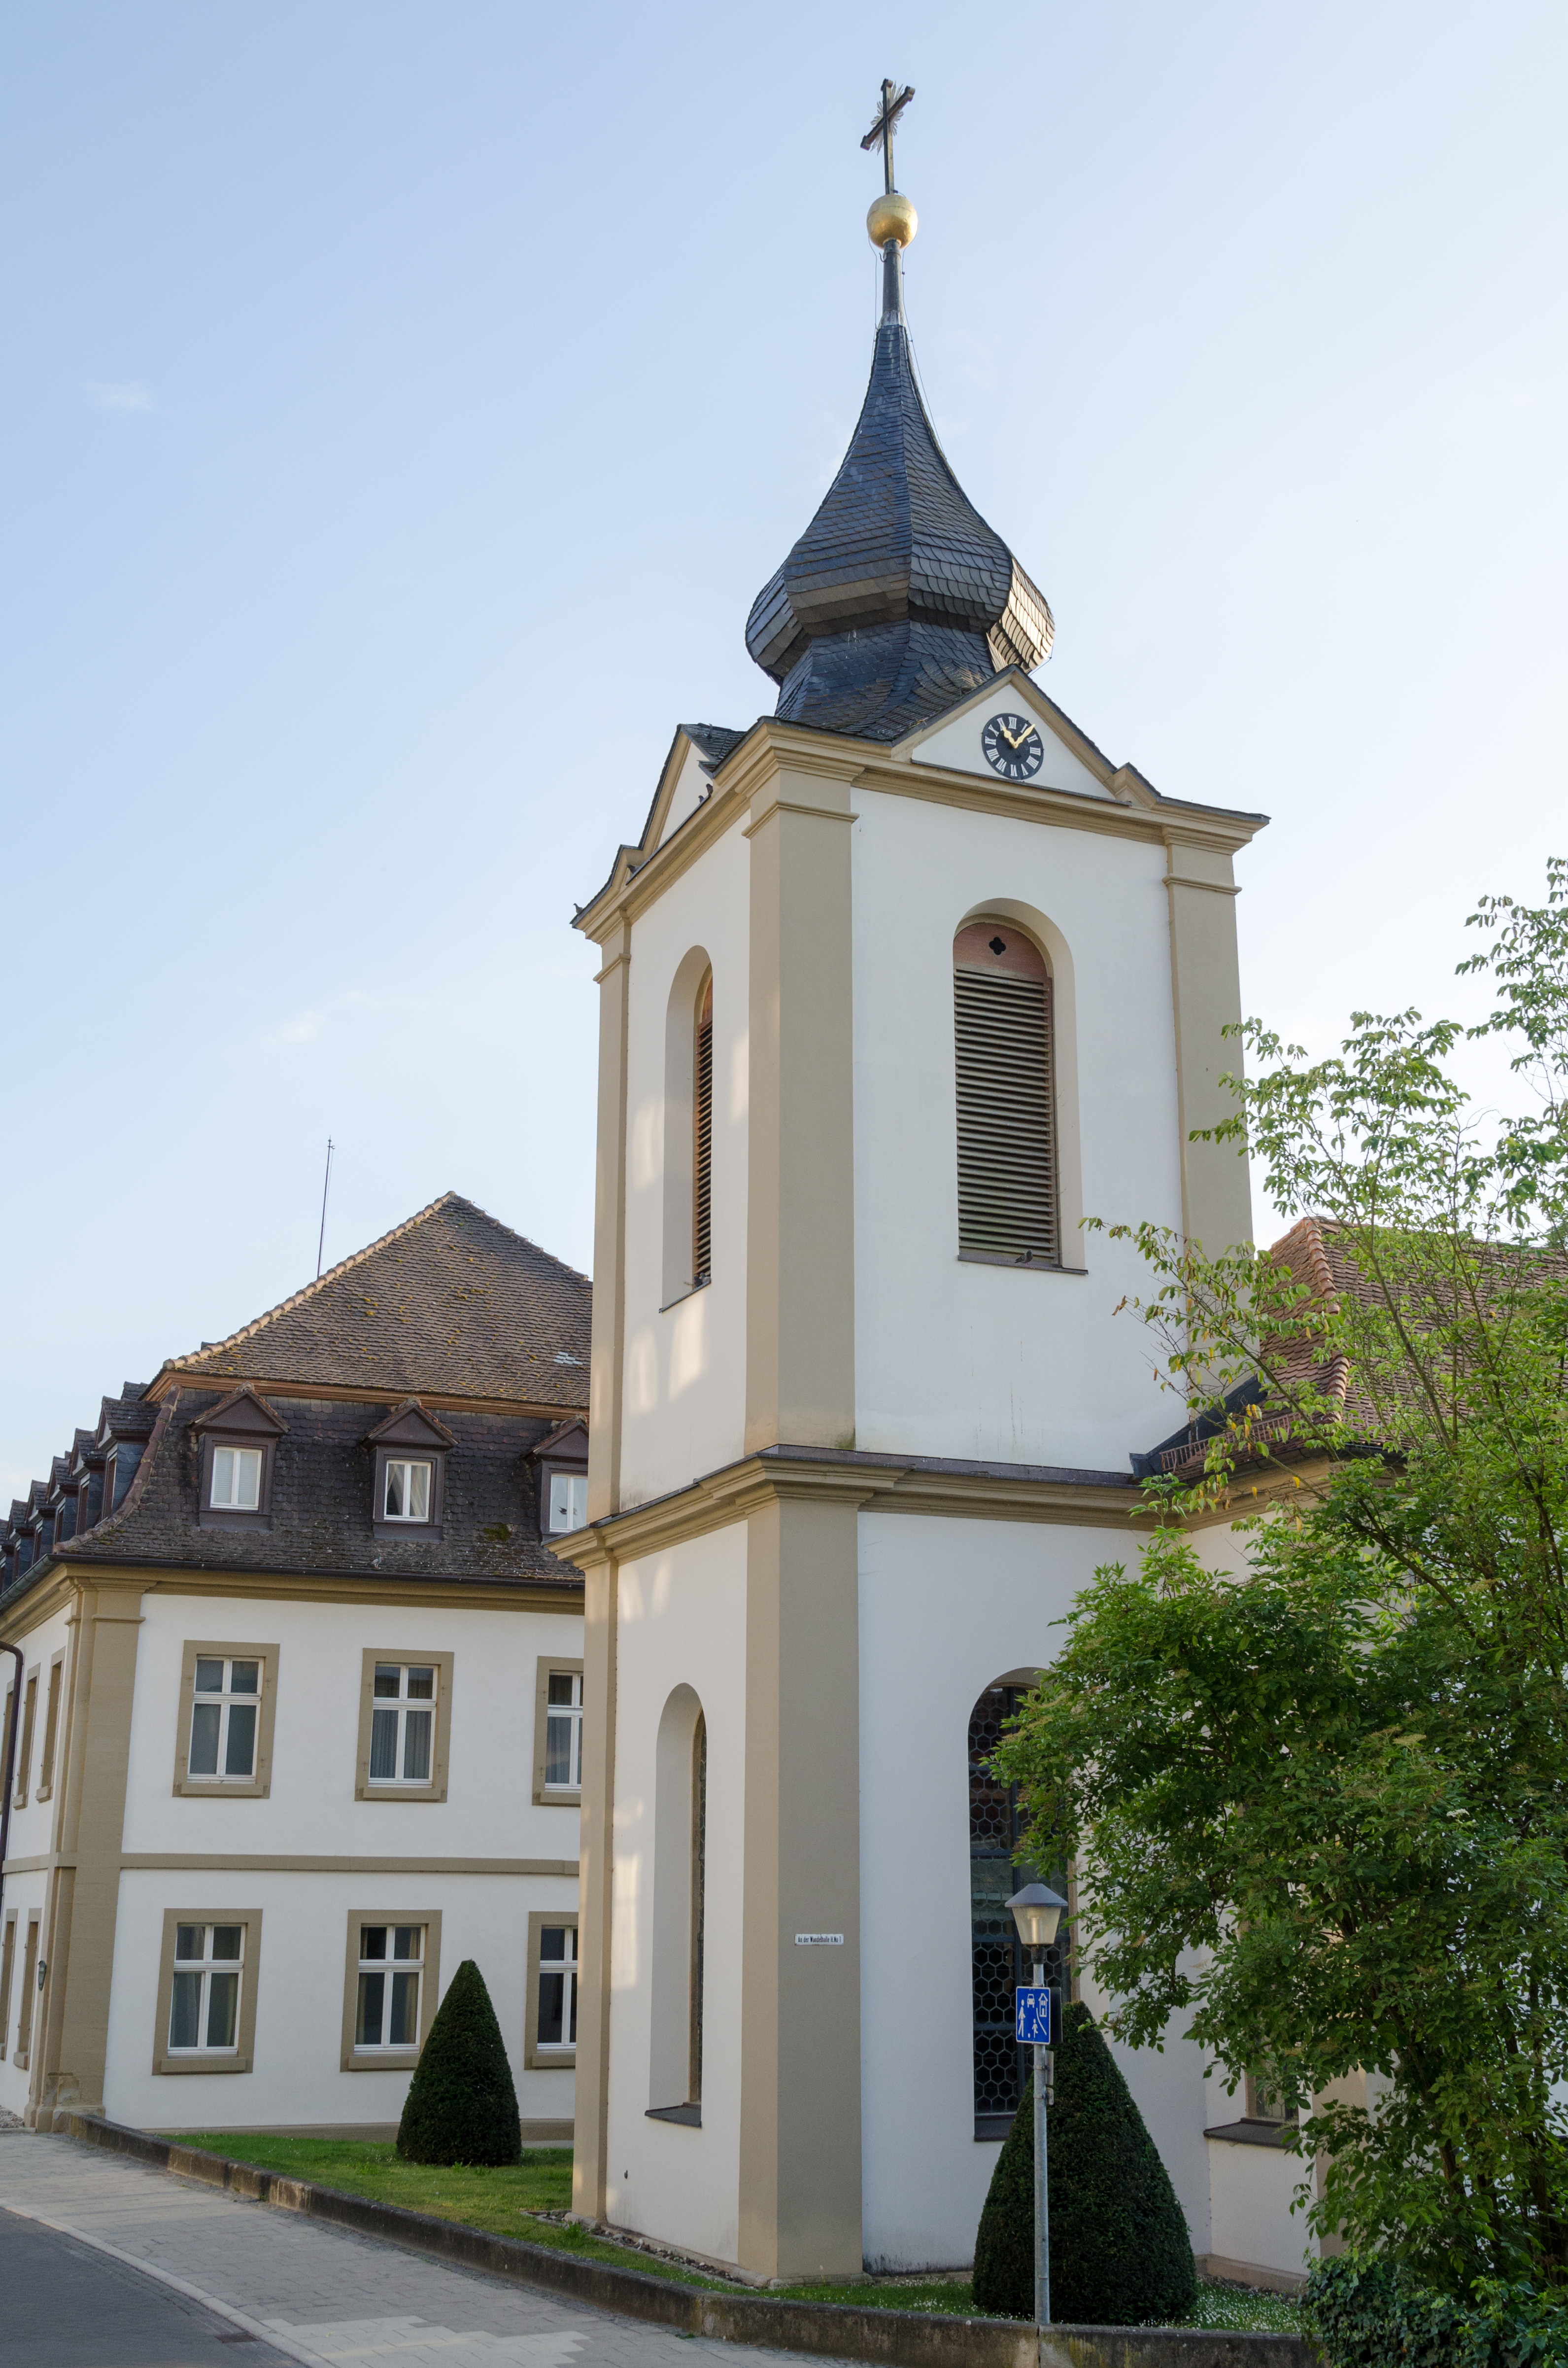 Bad Neustadt an der Saale, Bad Neuhaus, Katholische Schlosskapelle Hl. Kreuz, 002